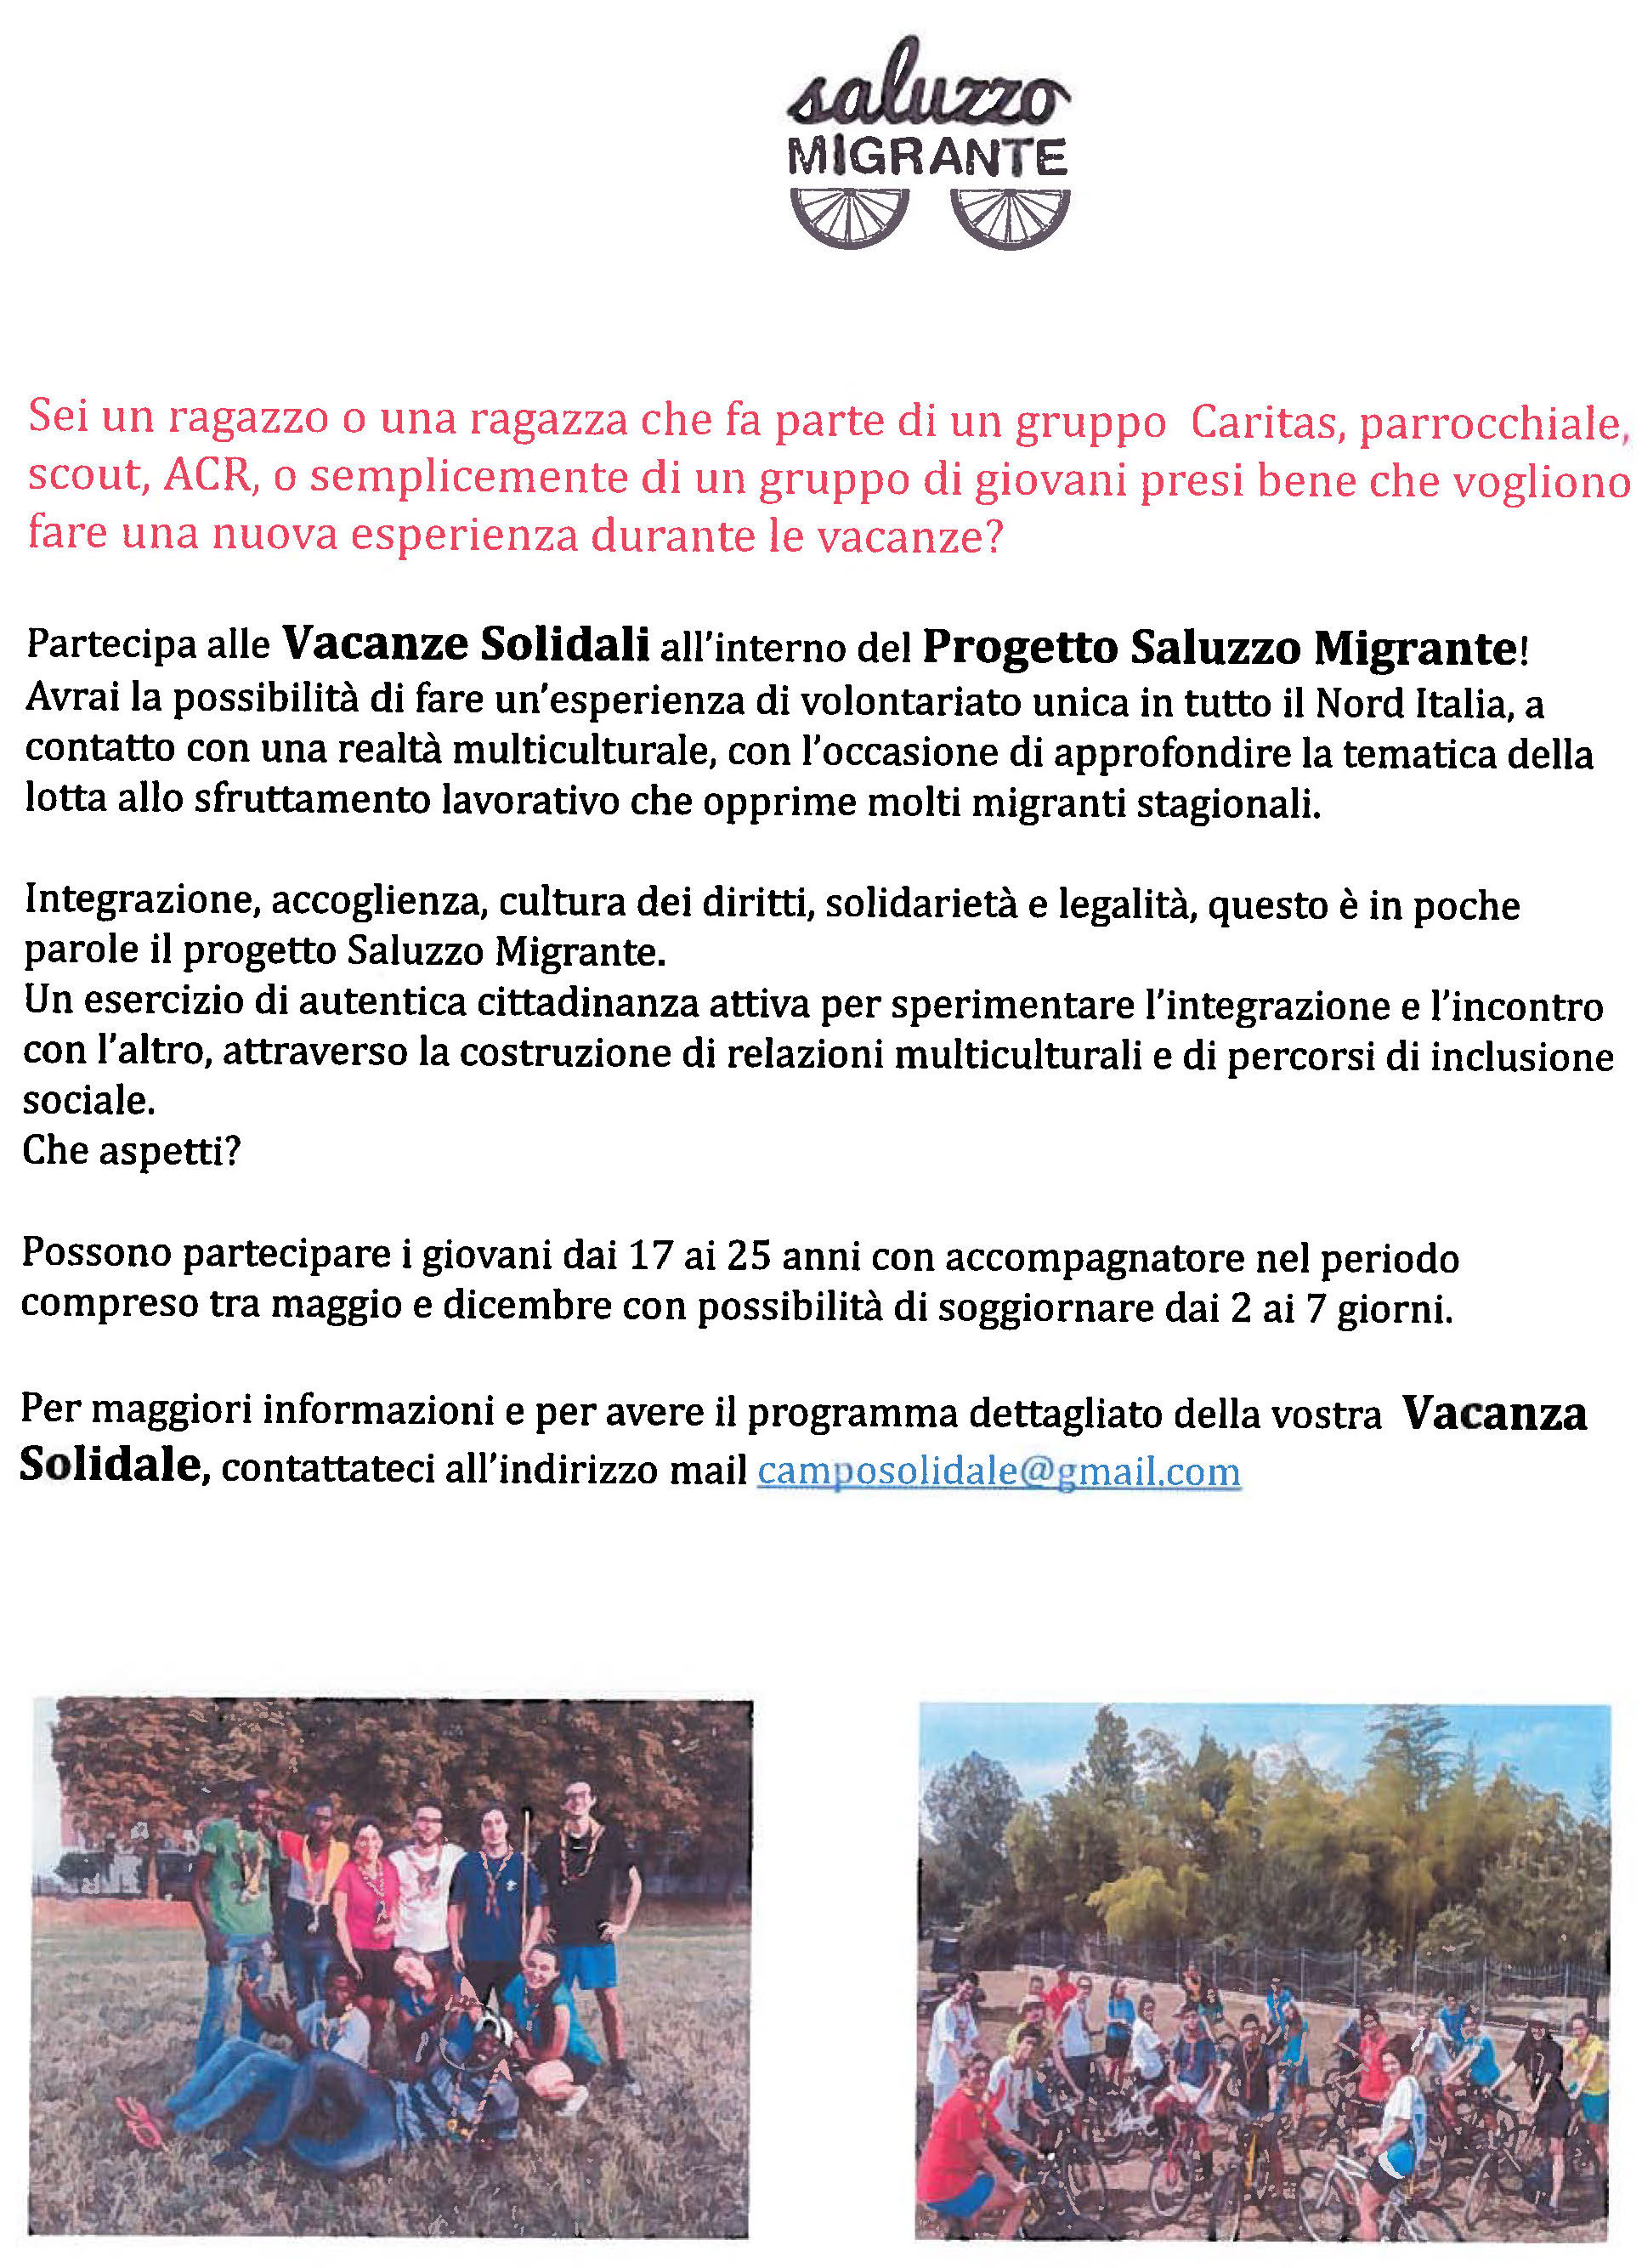 “Vacanze solidali” a Saluzzo per giovani